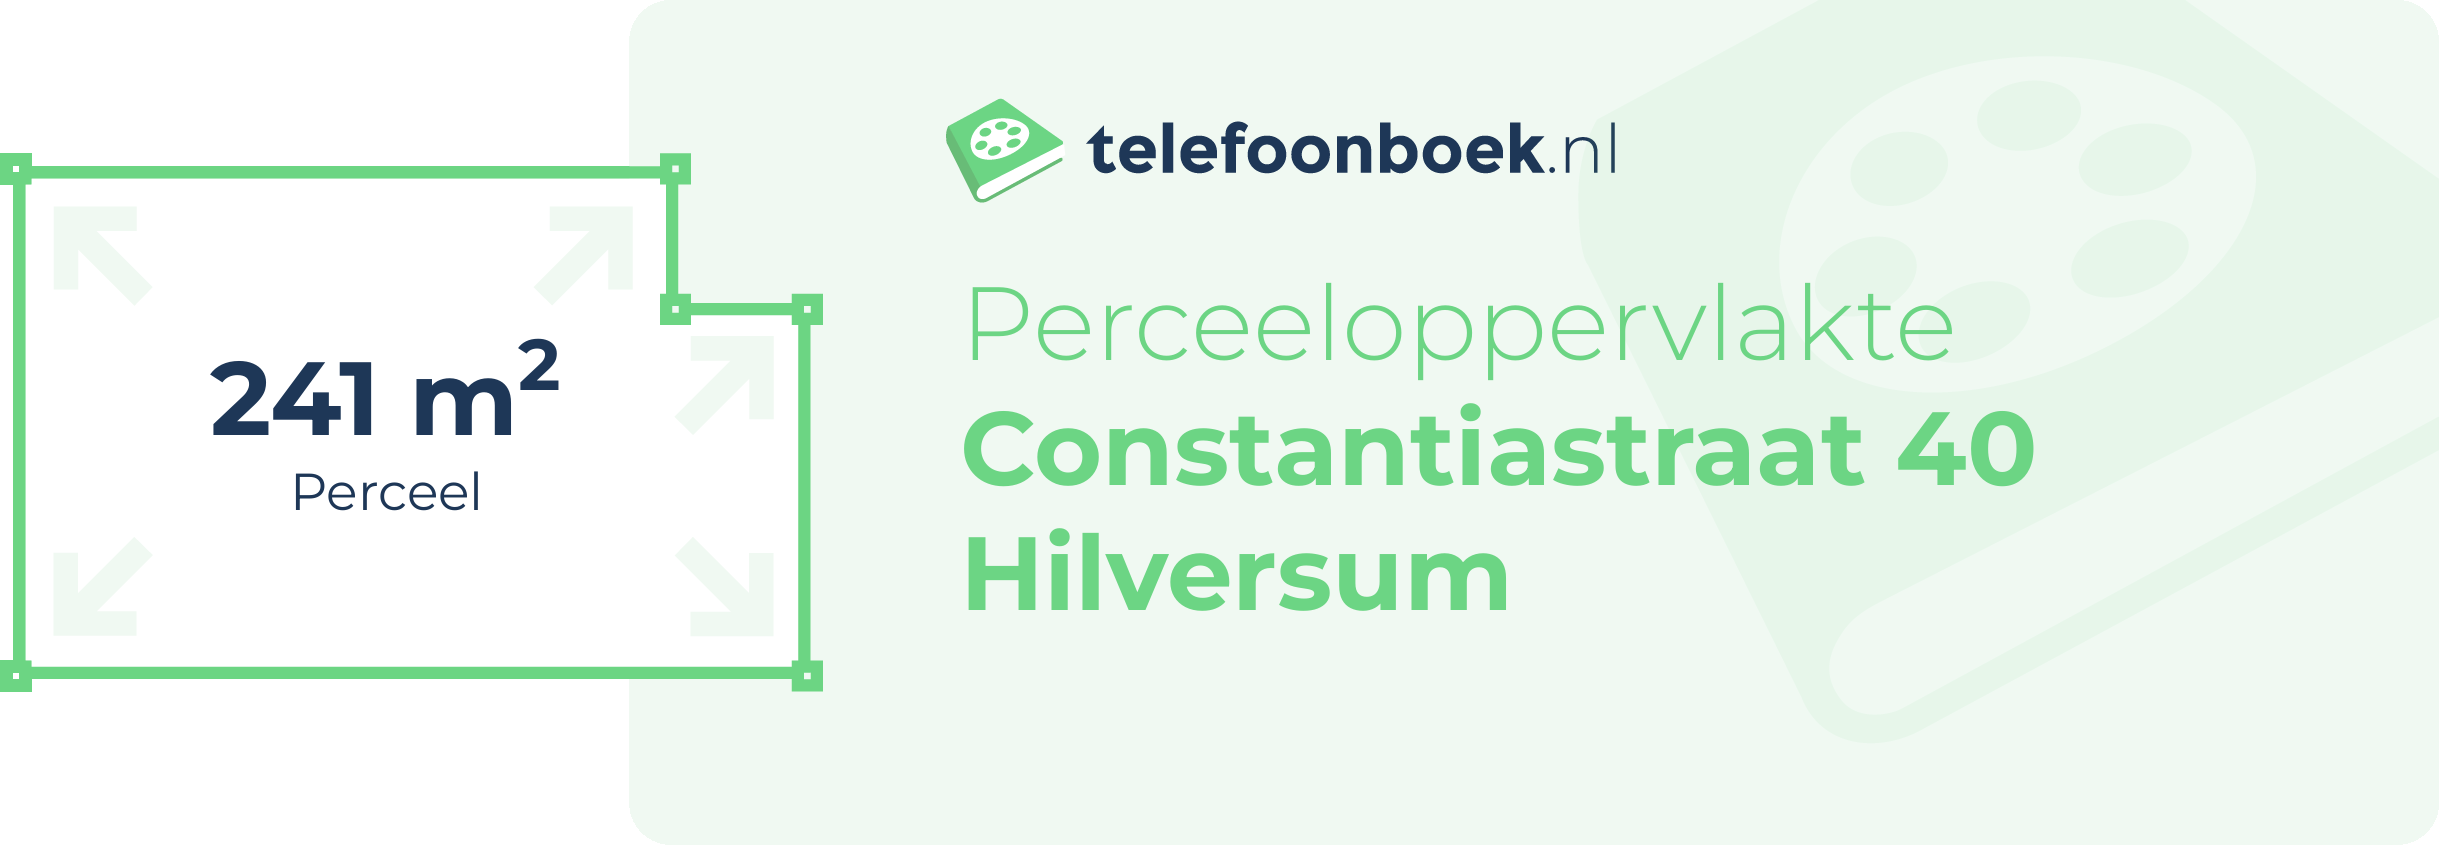 Perceeloppervlakte Constantiastraat 40 Hilversum